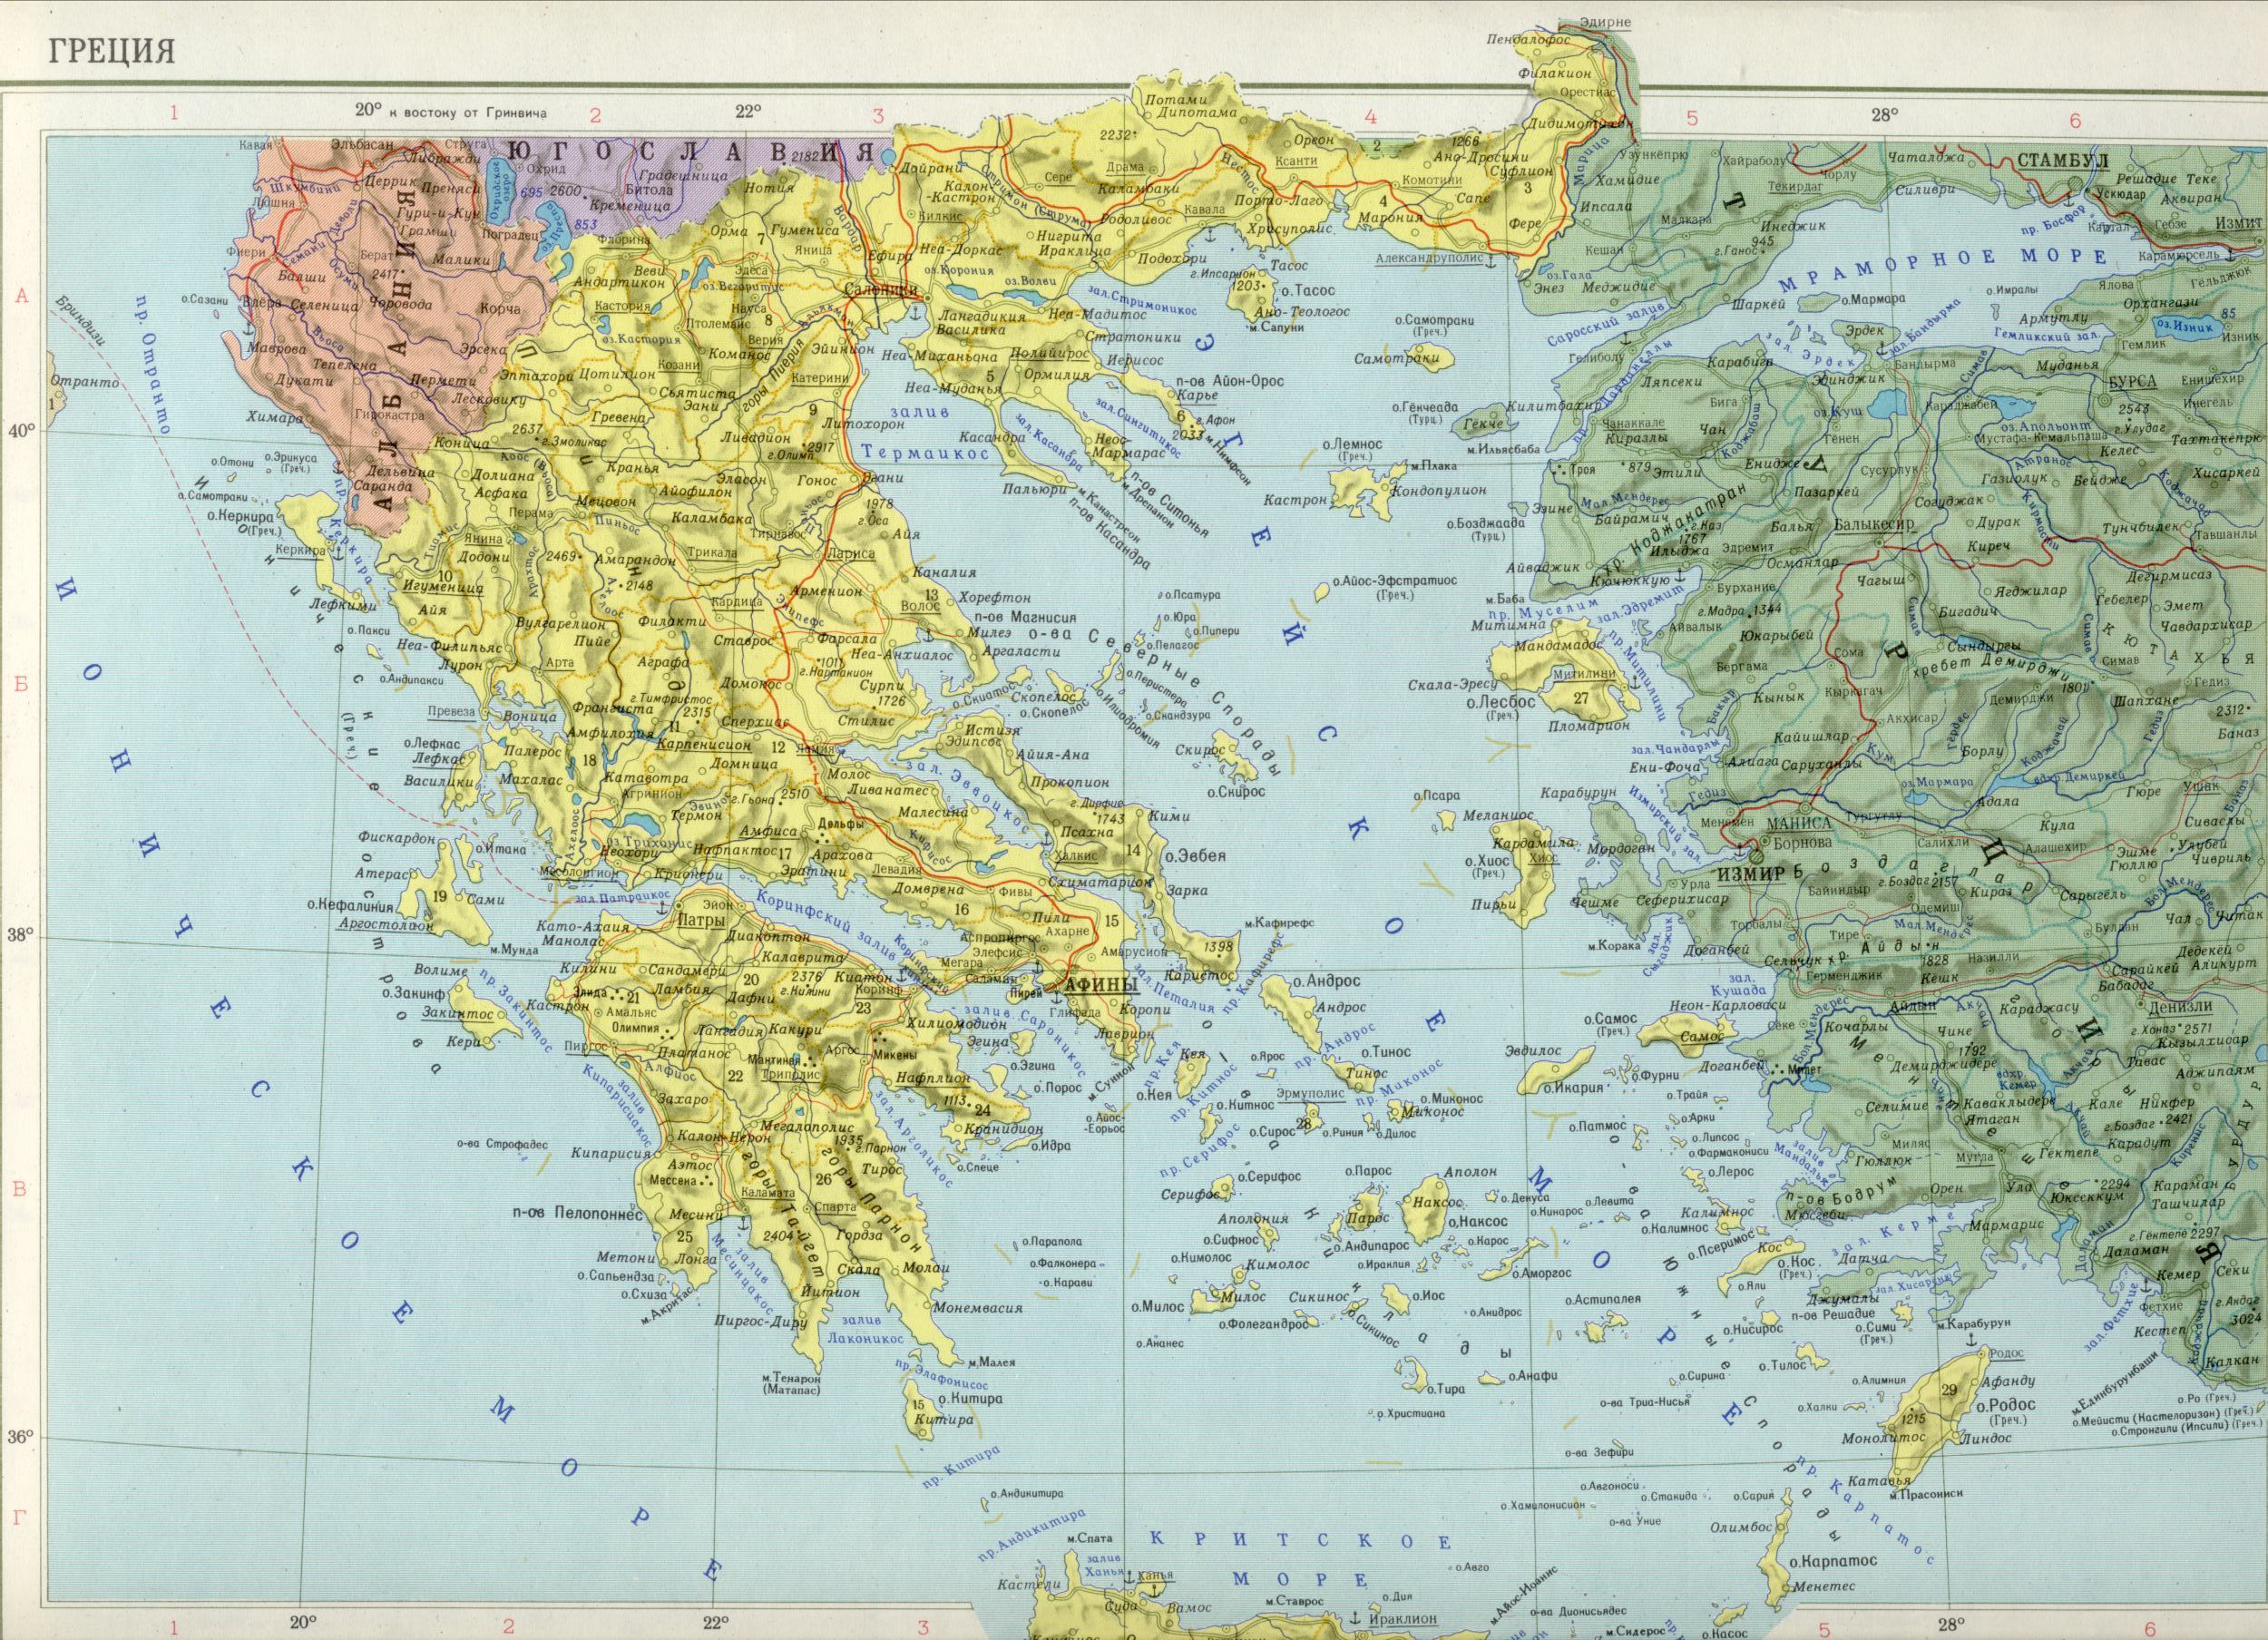 Карта Греции 1см=35км. скачать бесплатно политические карты европы